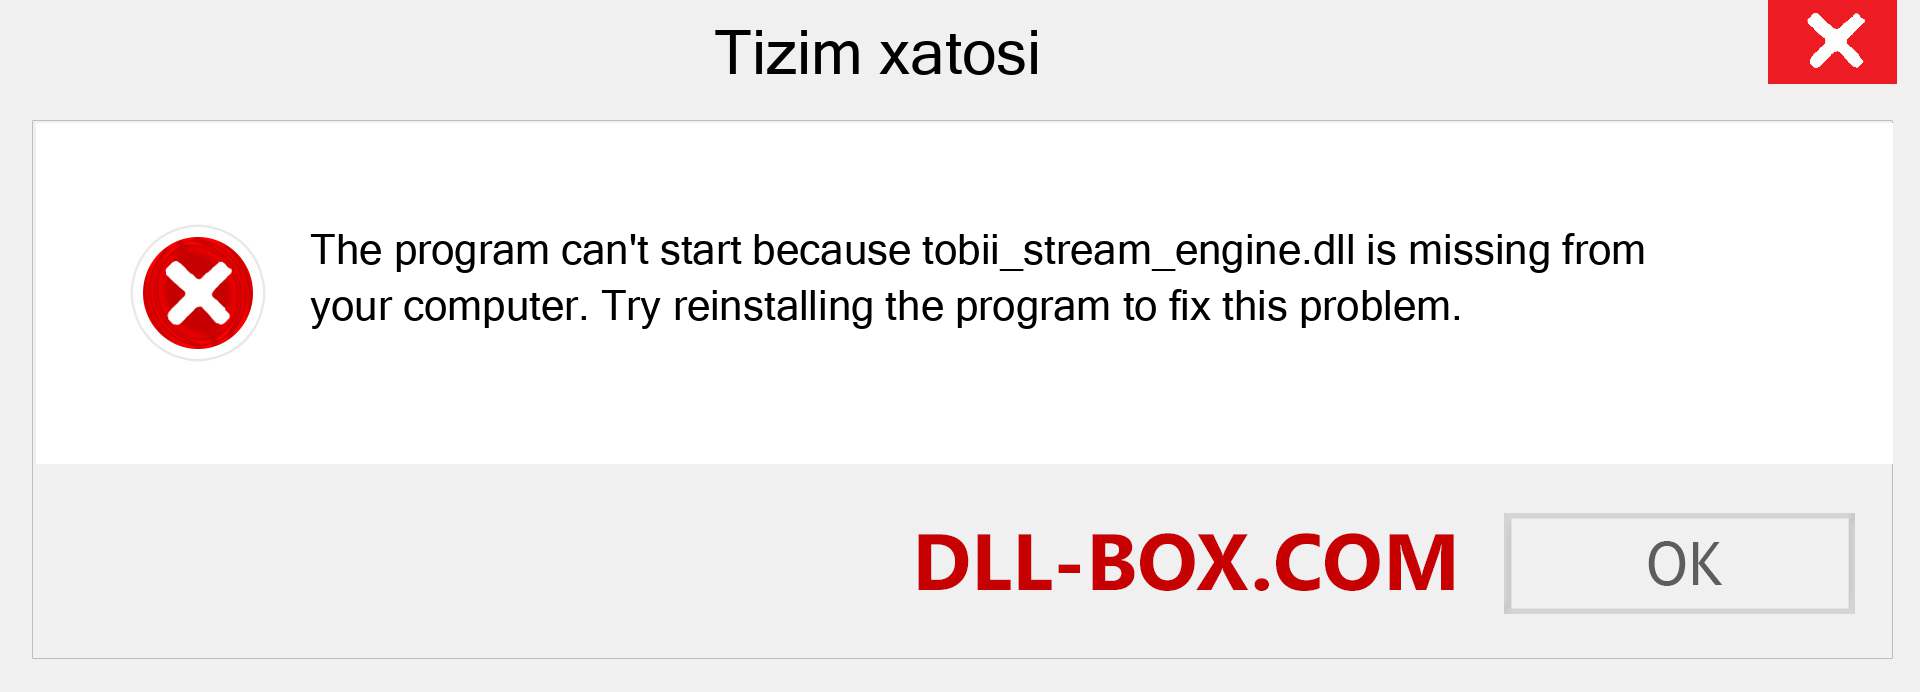 tobii_stream_engine.dll fayli yo'qolganmi?. Windows 7, 8, 10 uchun yuklab olish - Windowsda tobii_stream_engine dll etishmayotgan xatoni tuzating, rasmlar, rasmlar